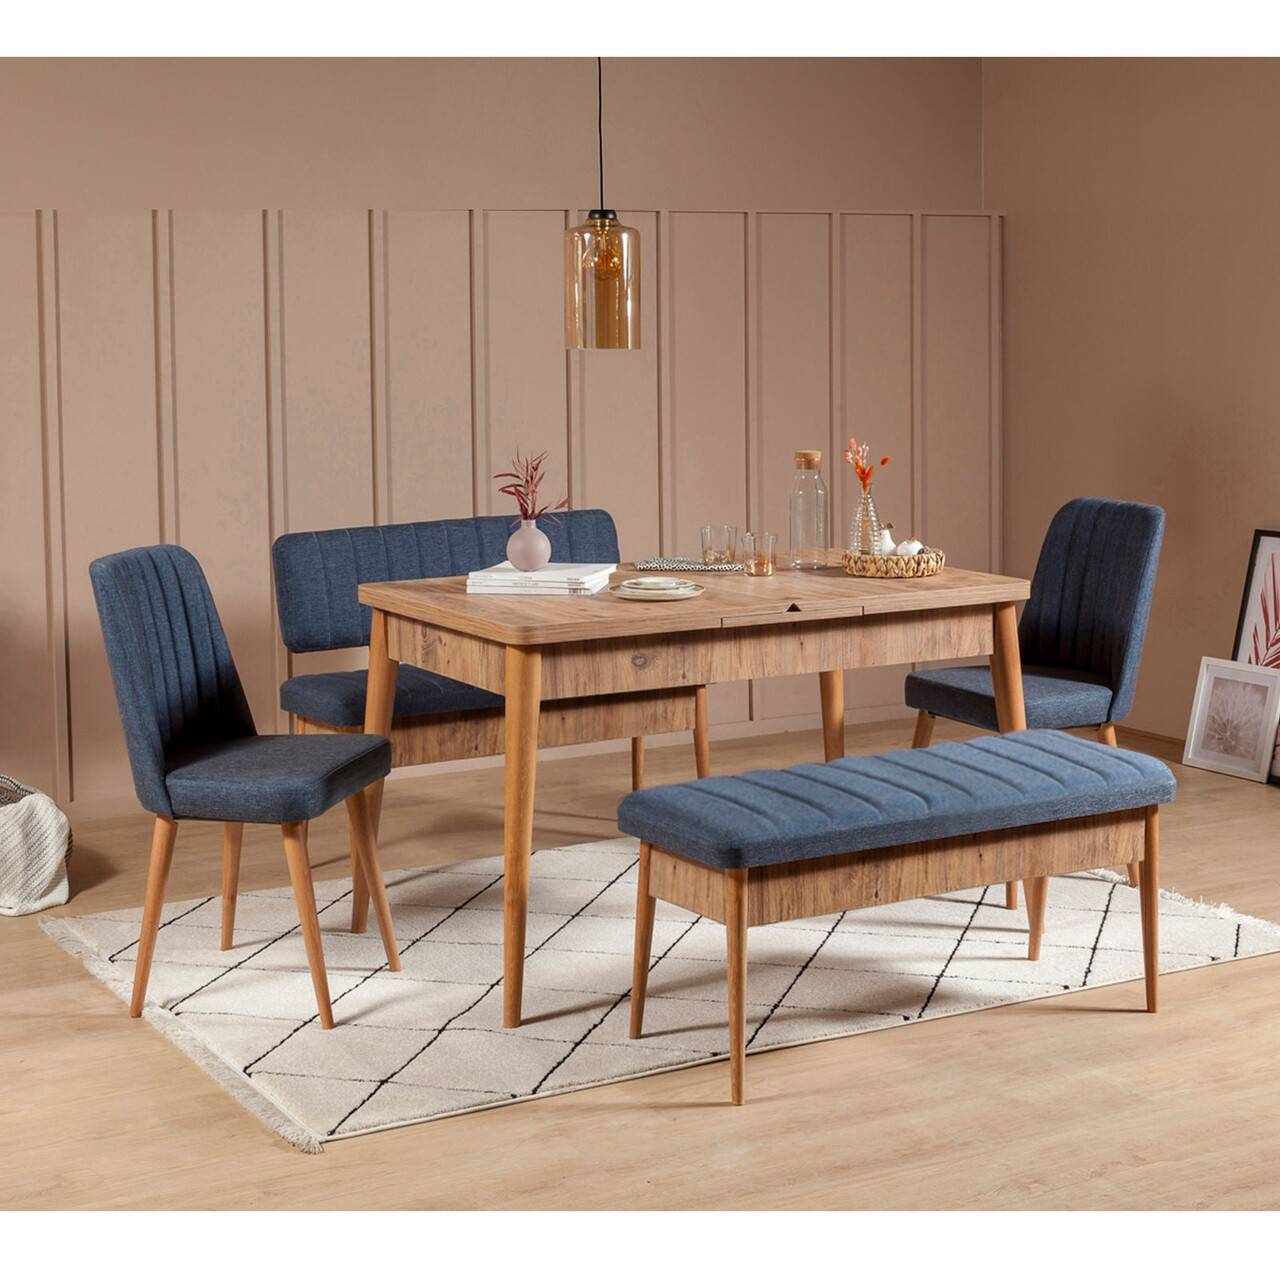 Set ausziehbarer Tisch, 2 Stühle, Bank und Sitzbank Malva Helles Holz und dunkelblauer Stoff